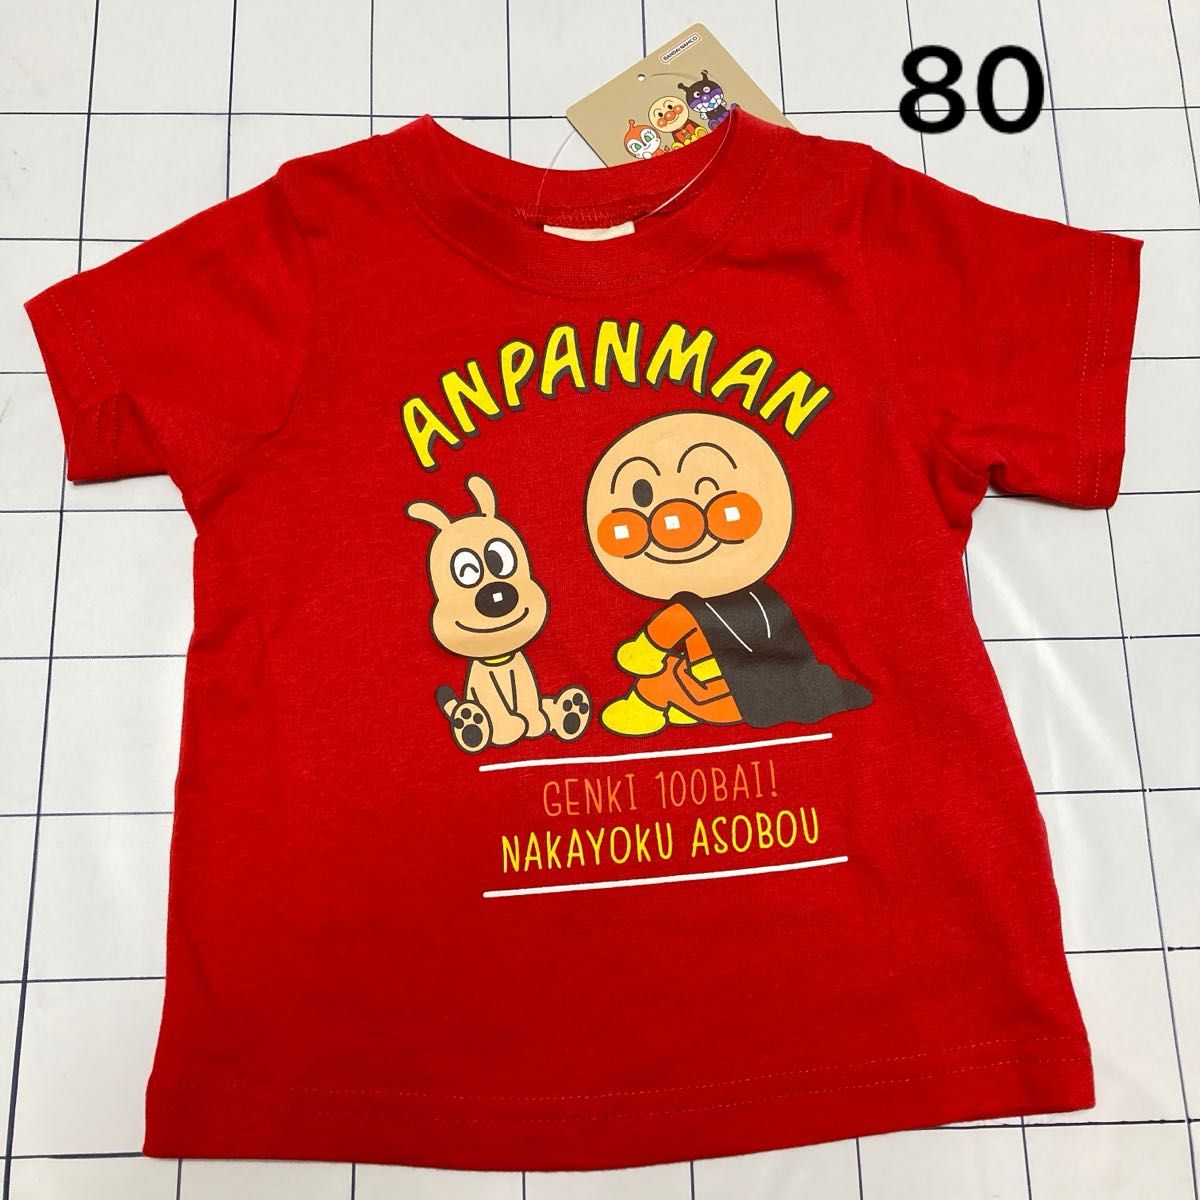 新品★タグ付★アンパンマン 半袖Tシャツ 80★赤 チーズ 子供服